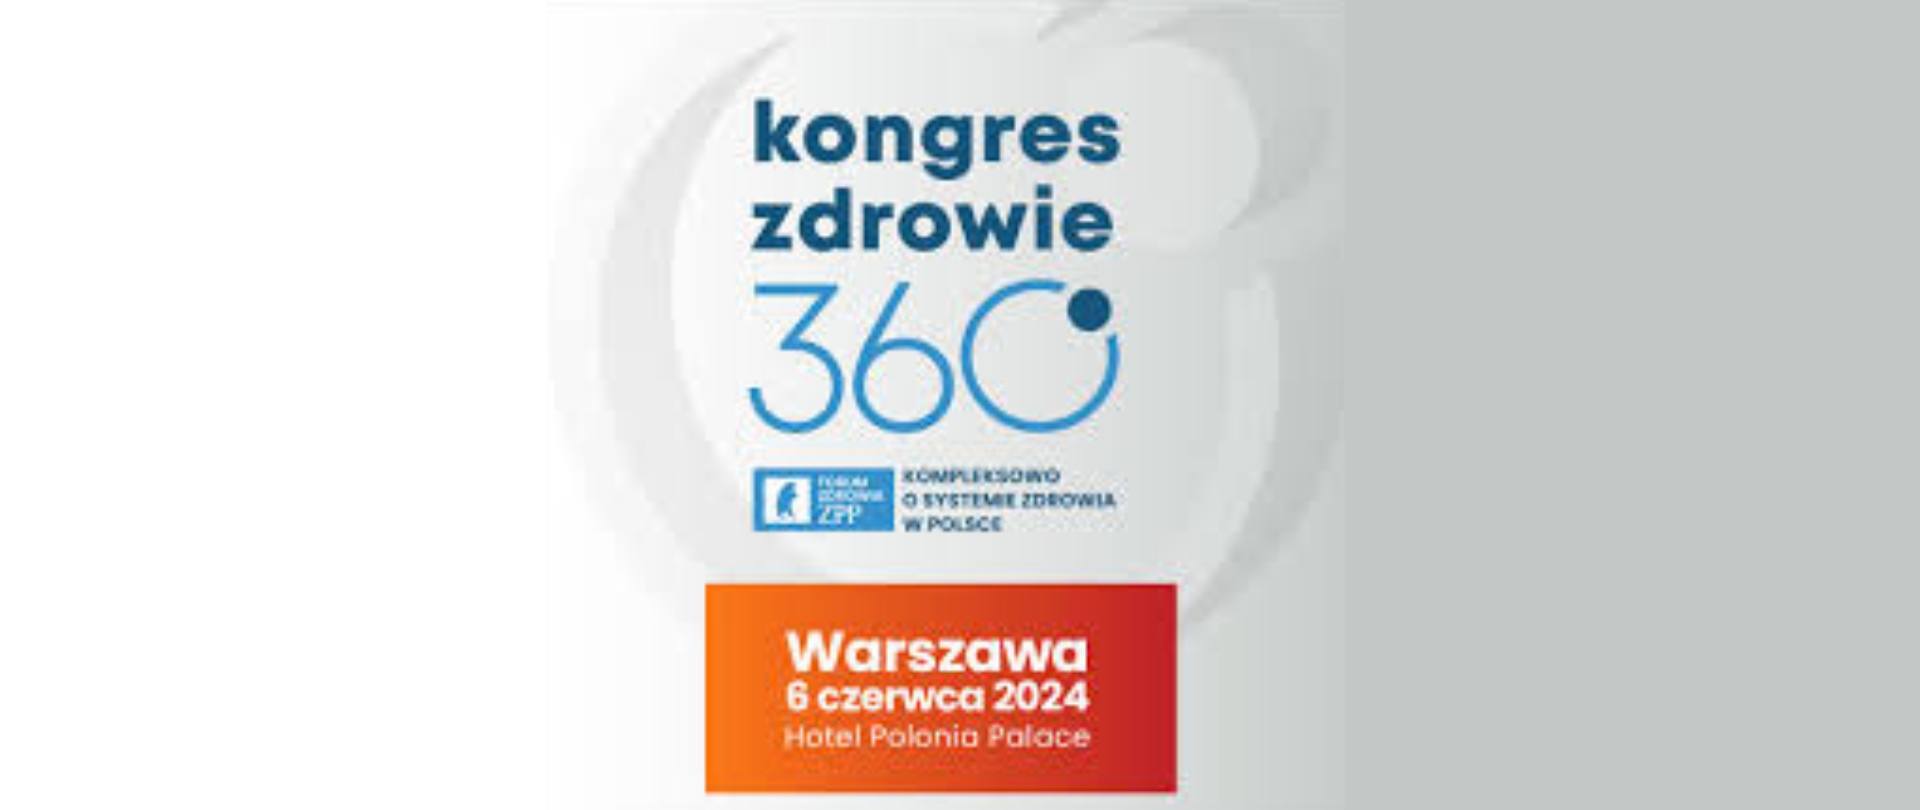 Logo - kongres